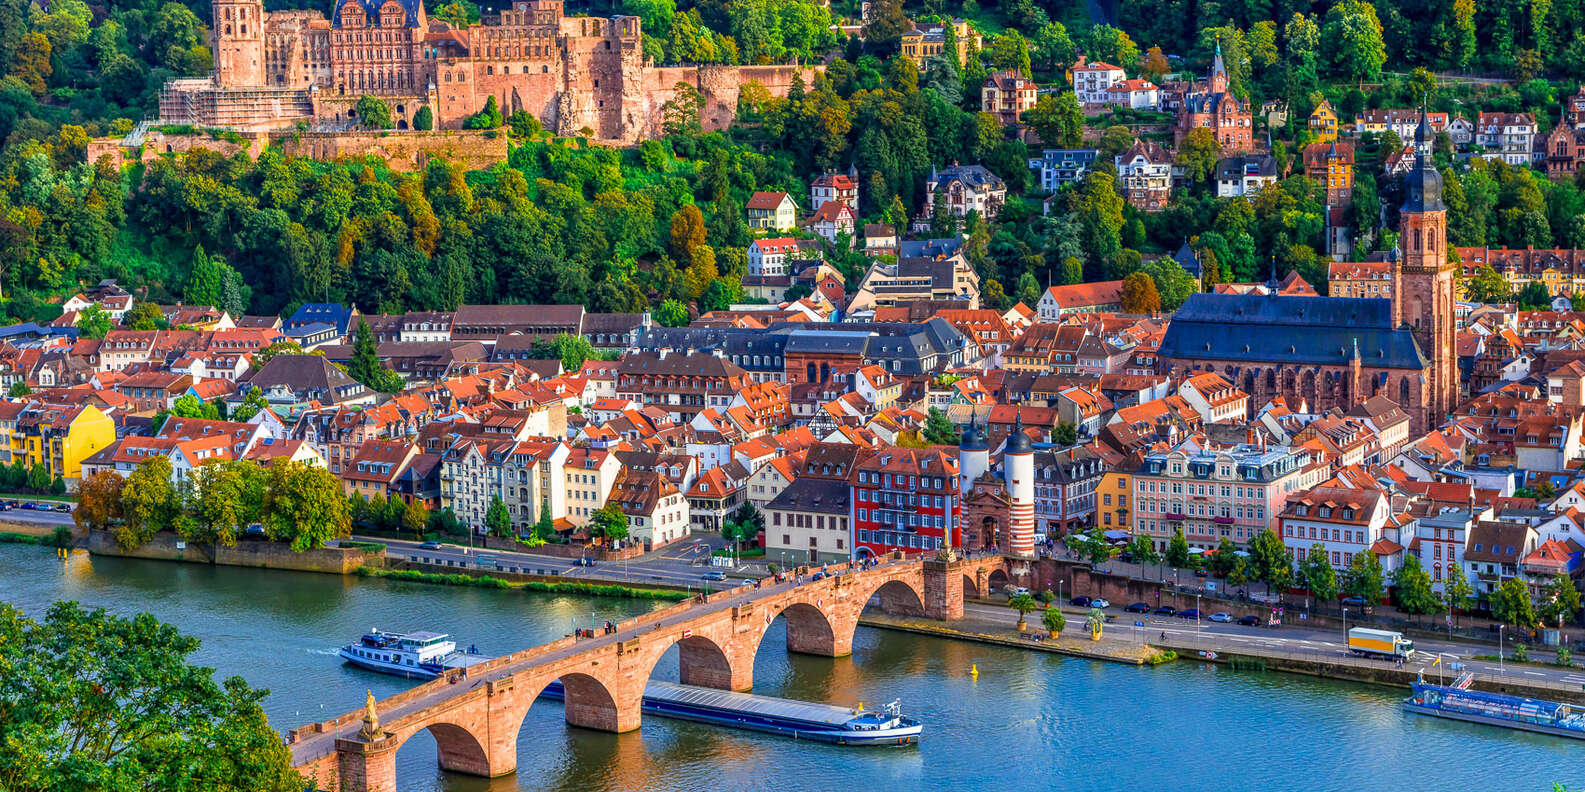 best things to do in Heidelberg